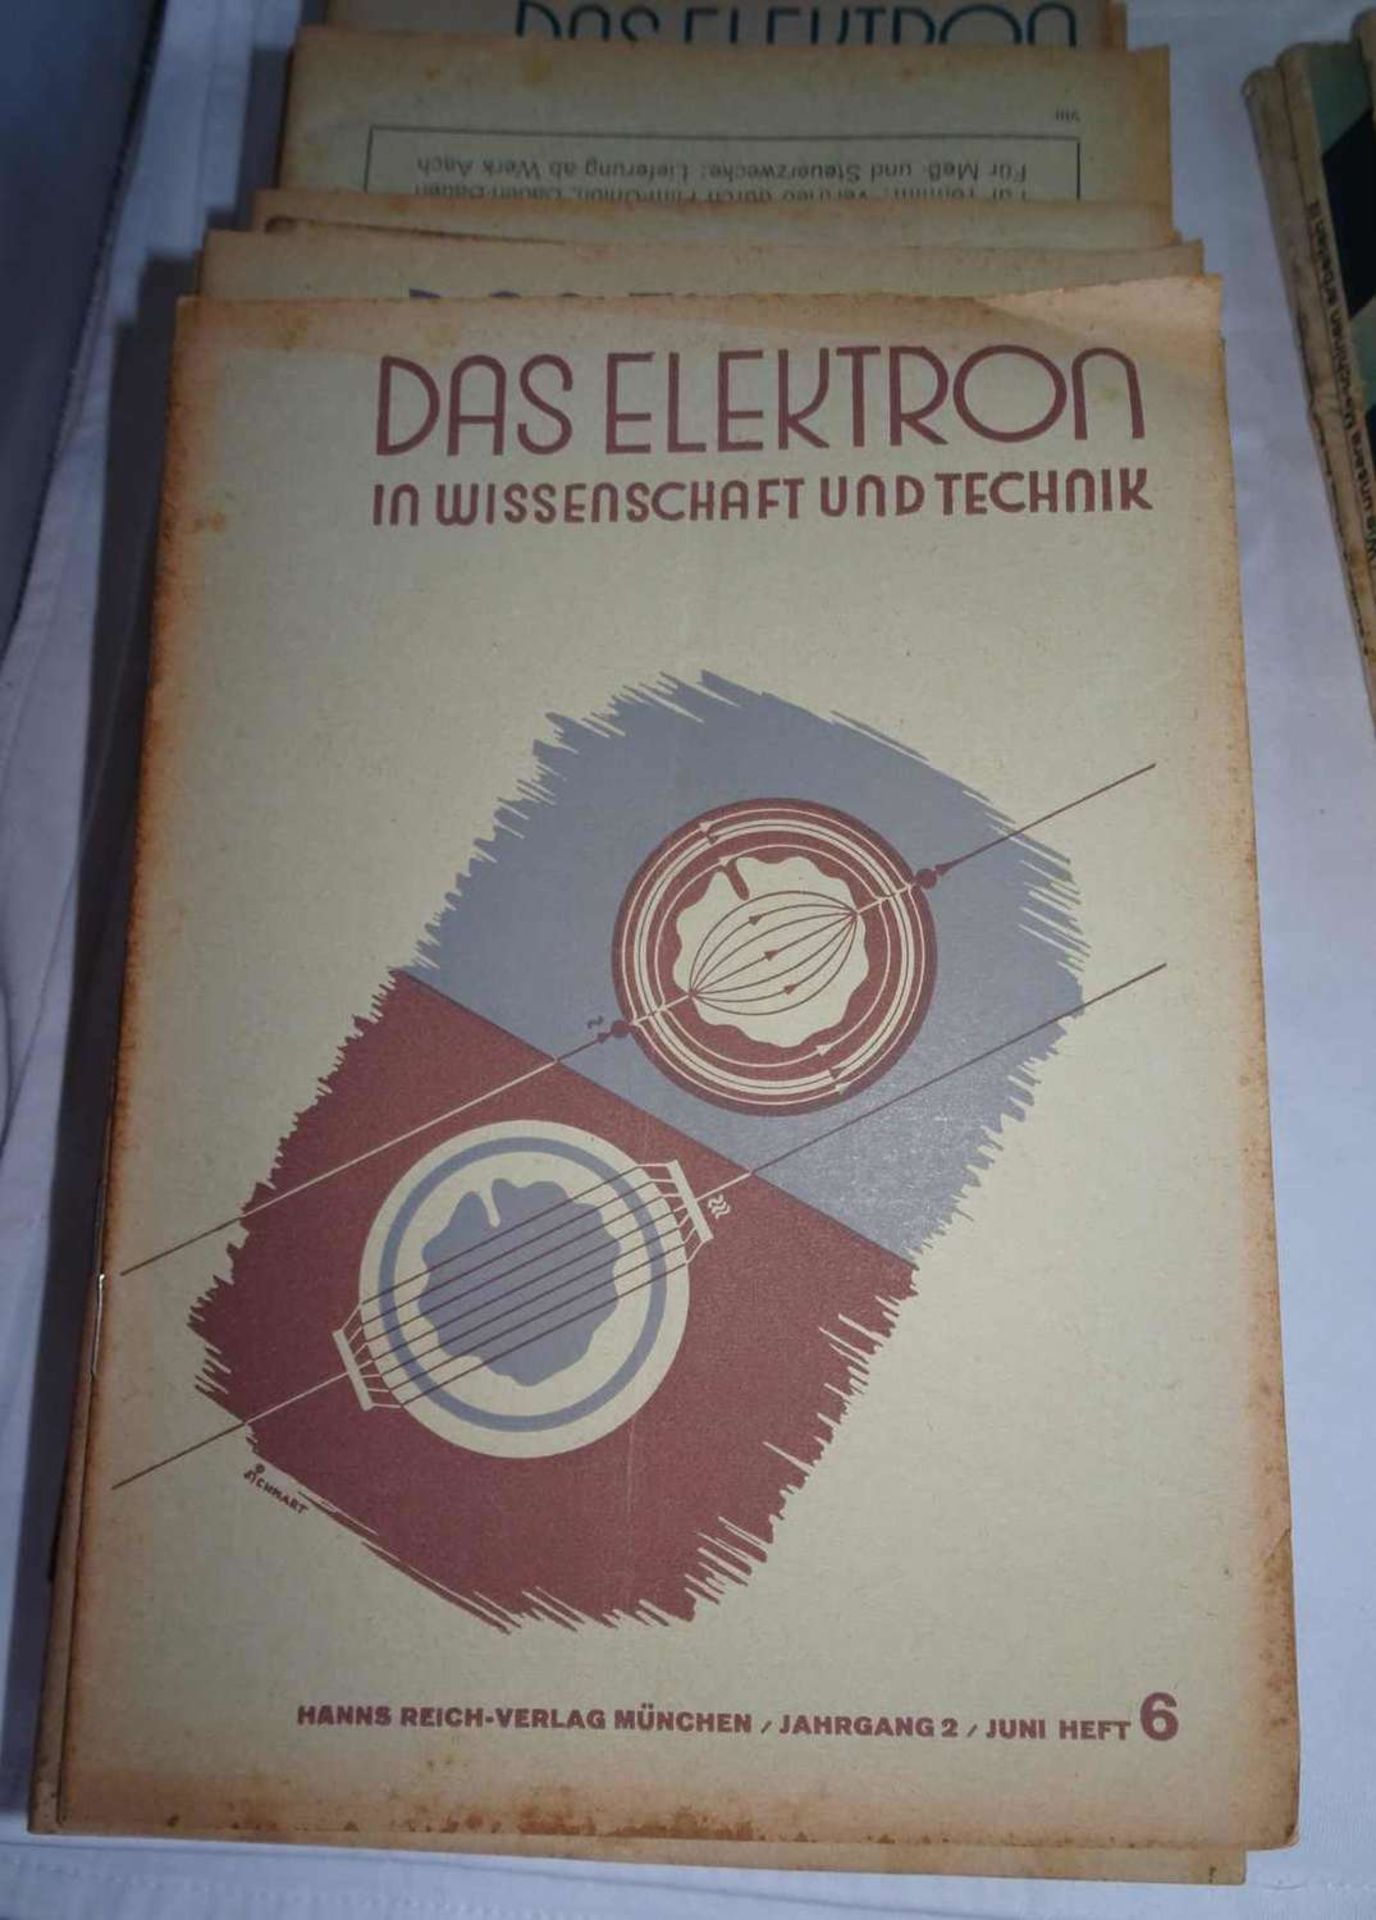 Lot Bücher zum Thema Technik, dabei "Das Elektron", "Wärmekraftmaschinen", "Radio for Beginners", - Bild 3 aus 3